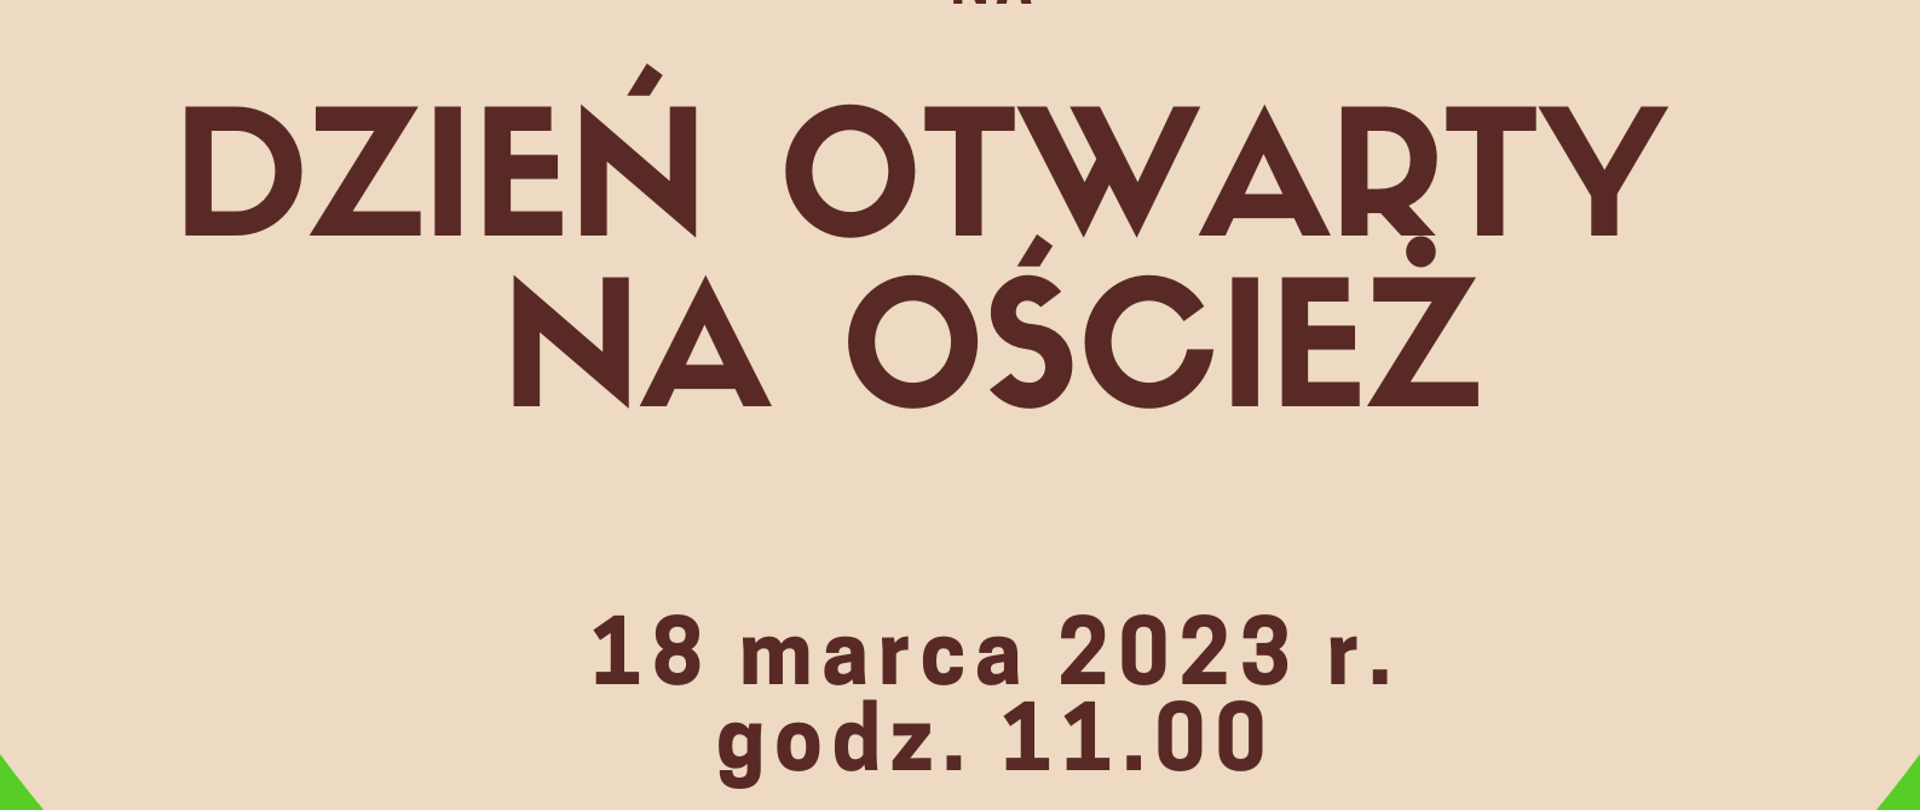 W dolnej części plakatu rysunki instrumentów na zielonym tle, w górnej części tytuł wydarzenia - Dzień otwarty na oścież , data i miejsce - 18 marca 2023 godz.11.00 na bladoróżowym tle.